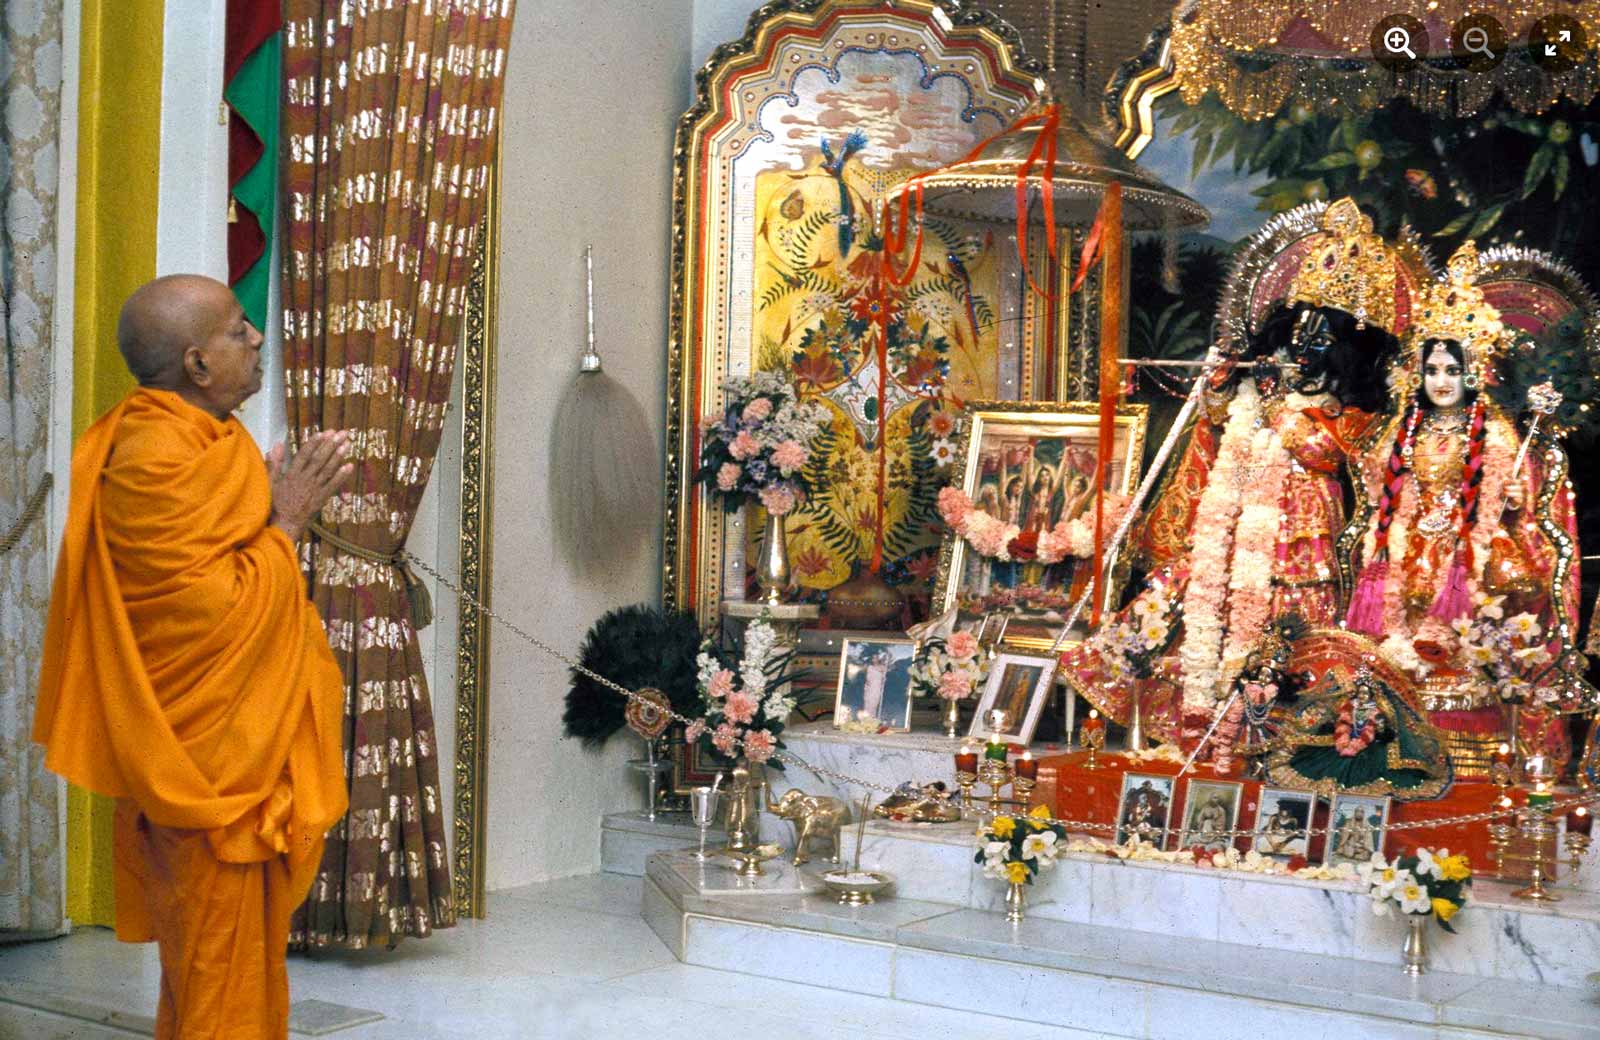 Prabhupada and Radha Govinda in the New York City temple